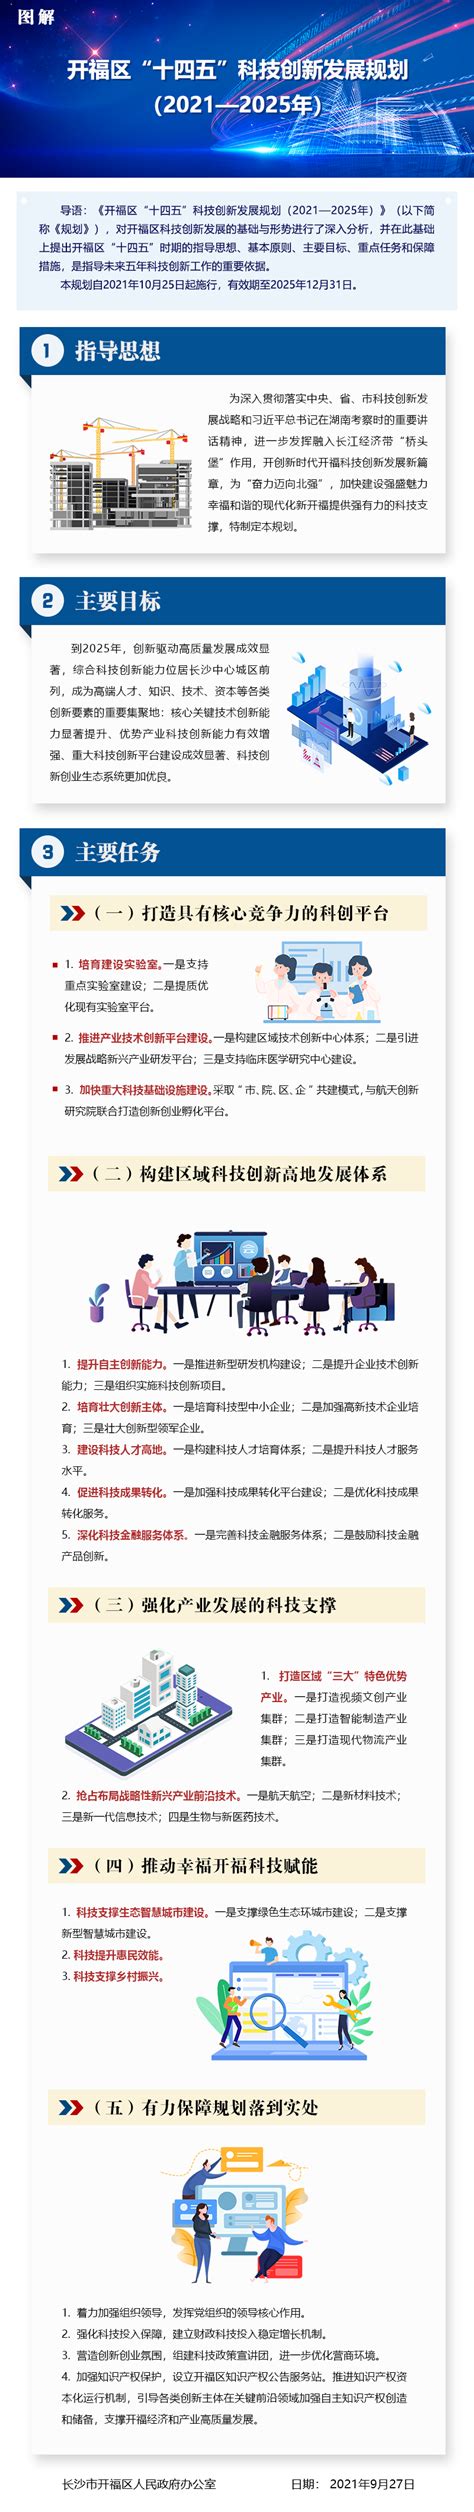 青海省十四五科技创新规划全文